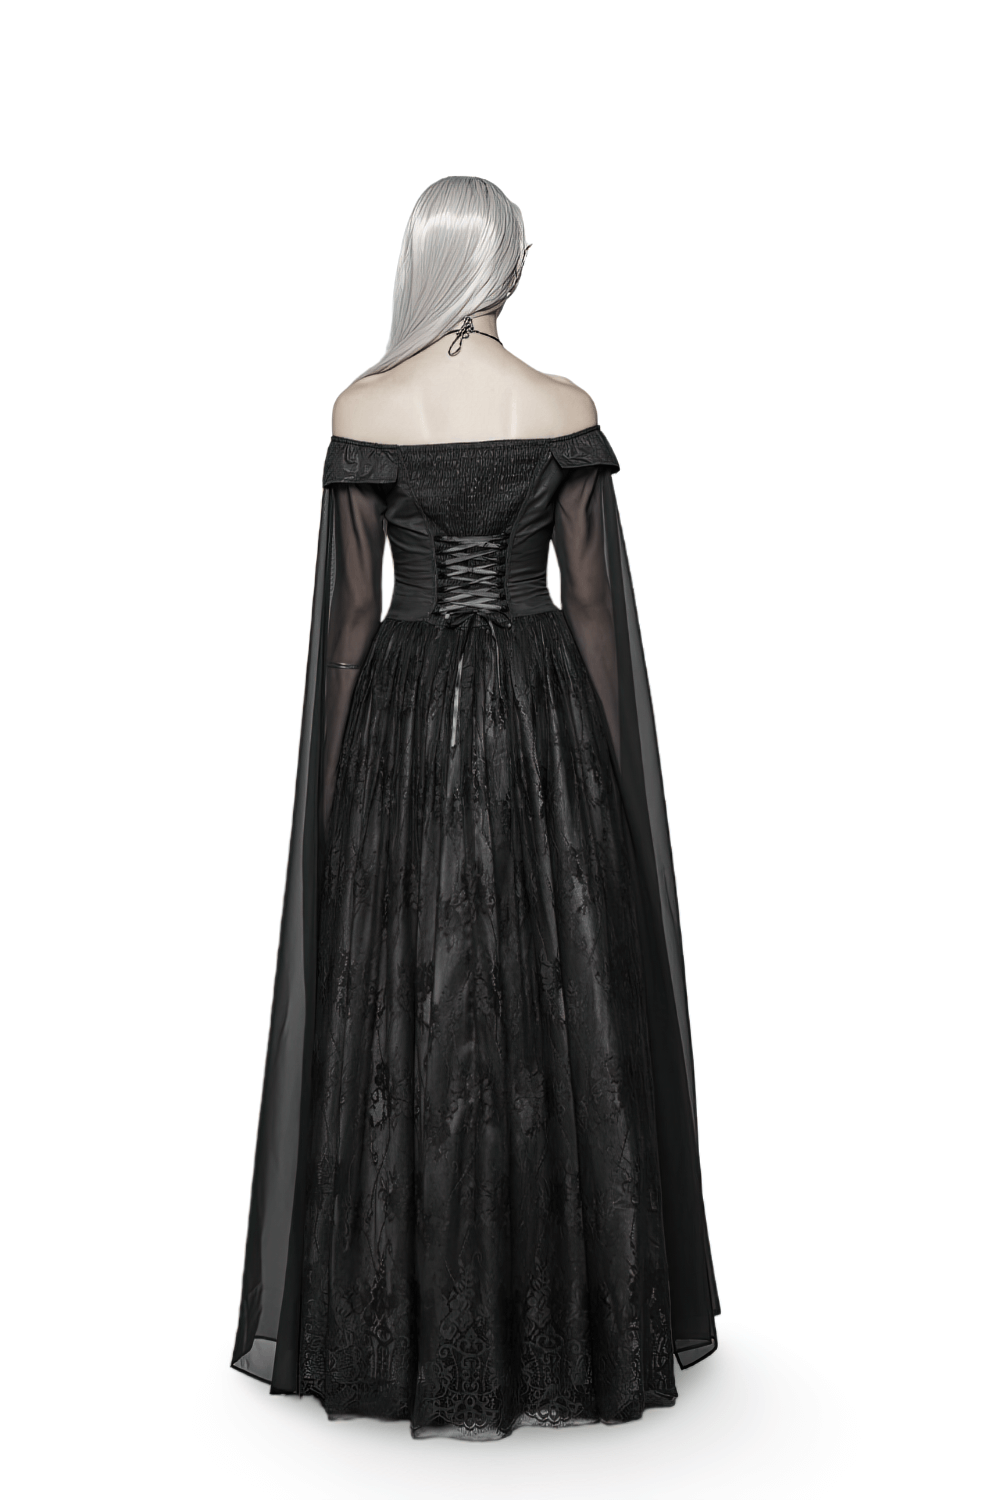 Punk Rave Celestia Gothic Victorian Lace Long Dress